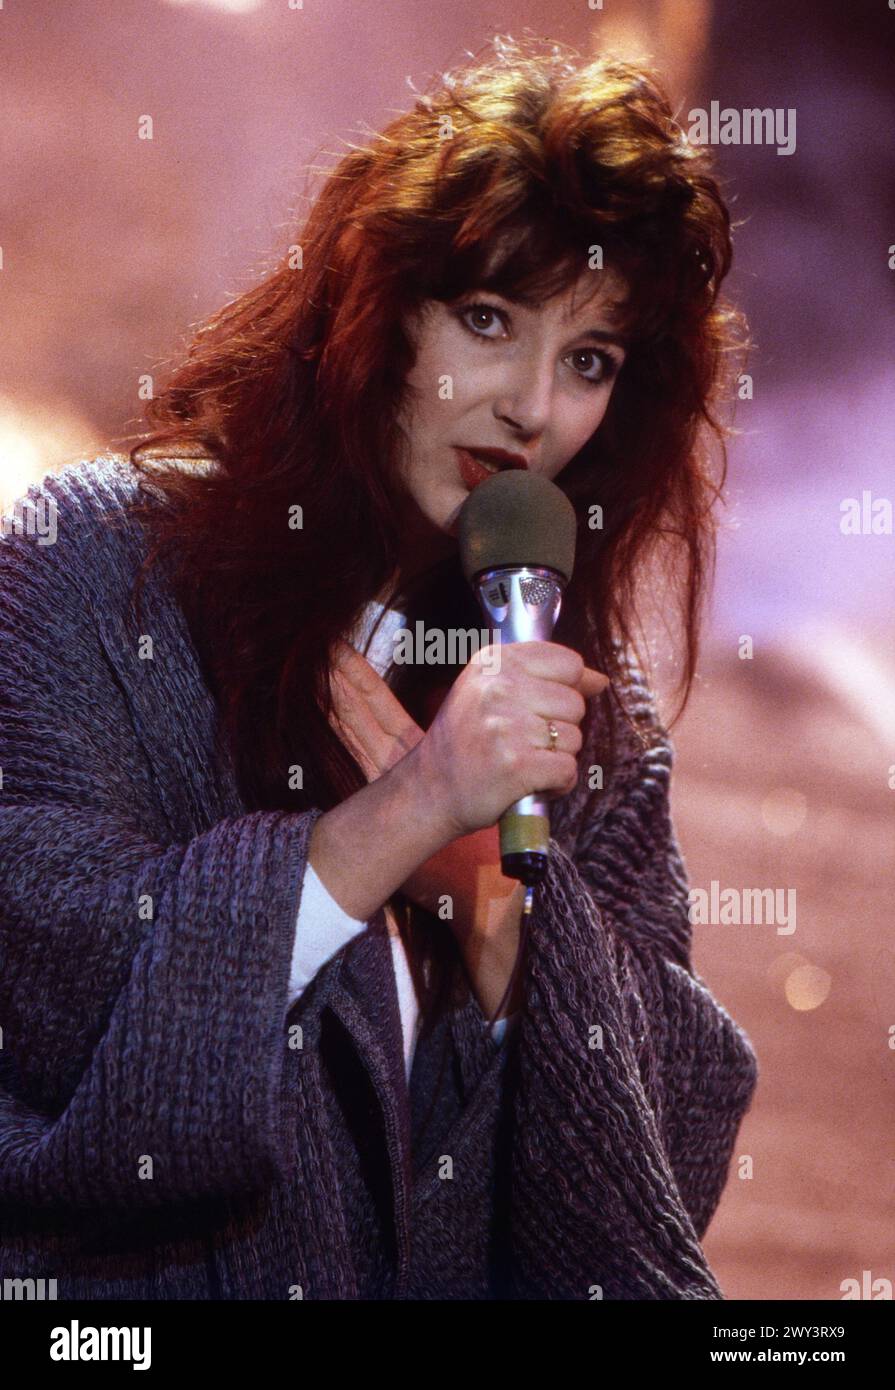 Kate Bush - Peter's Pop Show - 1985 - Kate Bush interpreta in der ZDF Sendung 'Peter's Pop Show' AM 30.11.1985 ihren Song 'Running Up That Hill'. Foto Stock